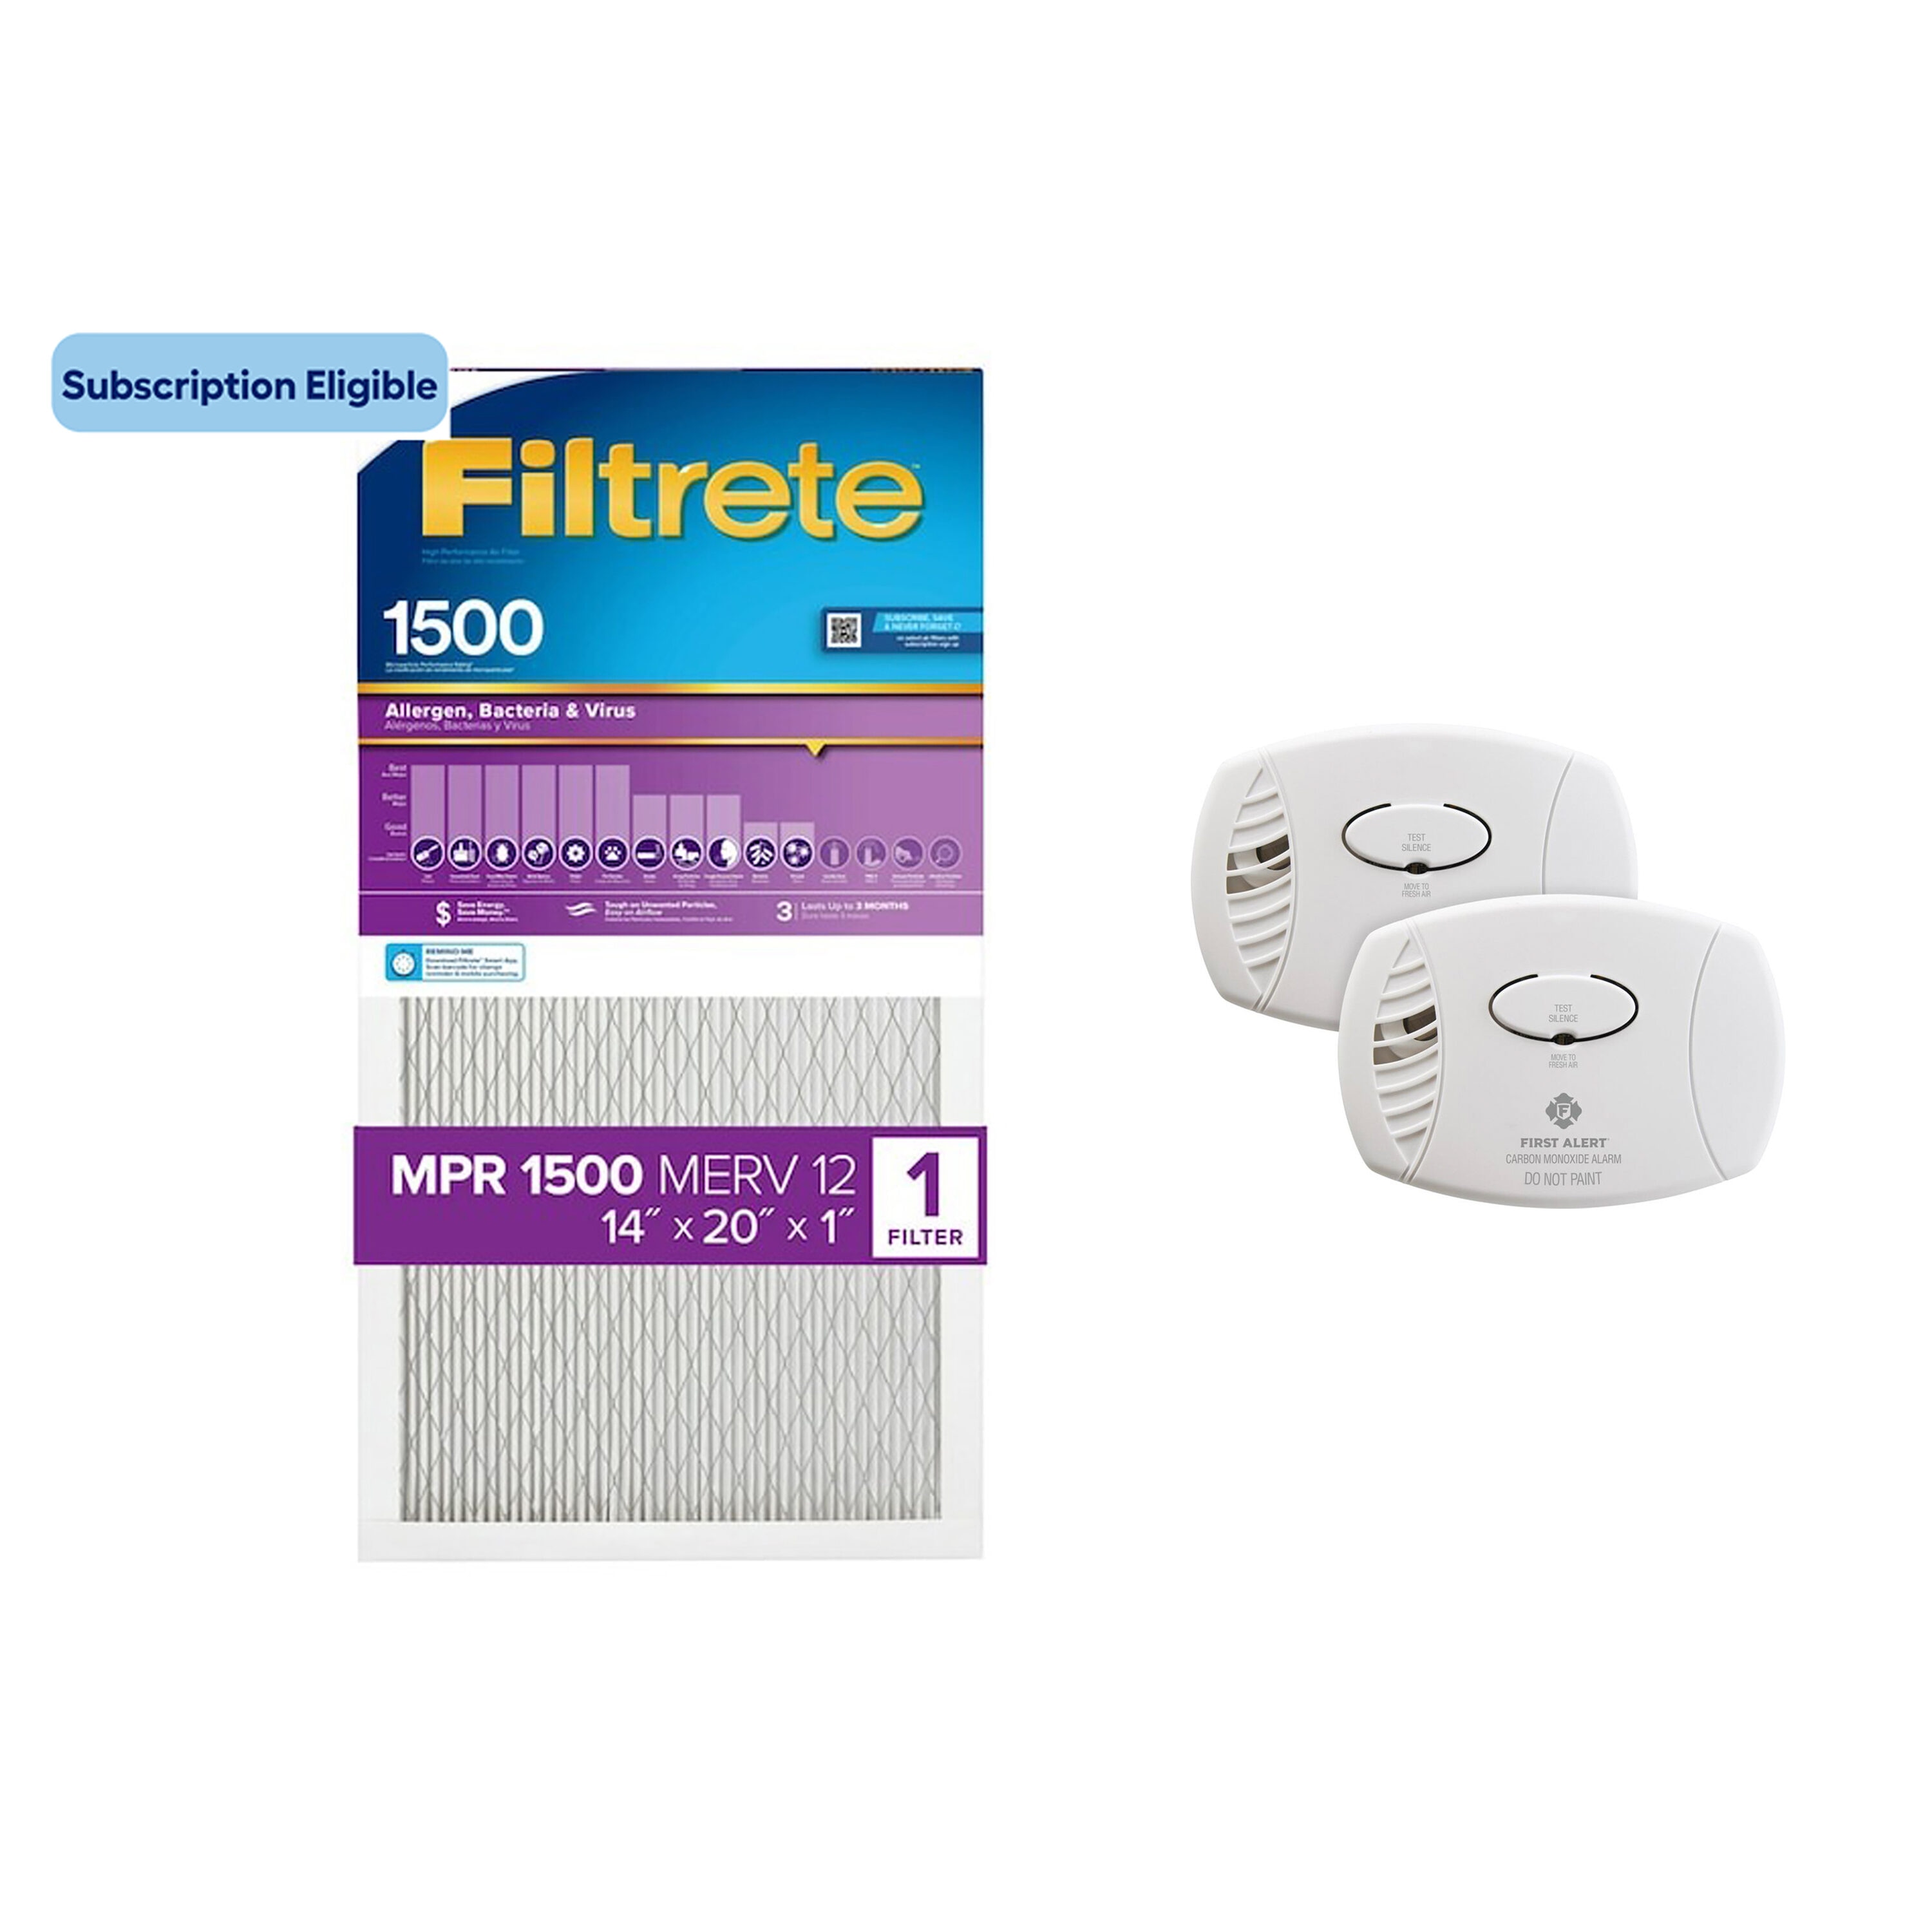 First Alert 2-Pack Plug-in Carbon Monoxide Detector in the Carbon Monoxide  Detectors department at